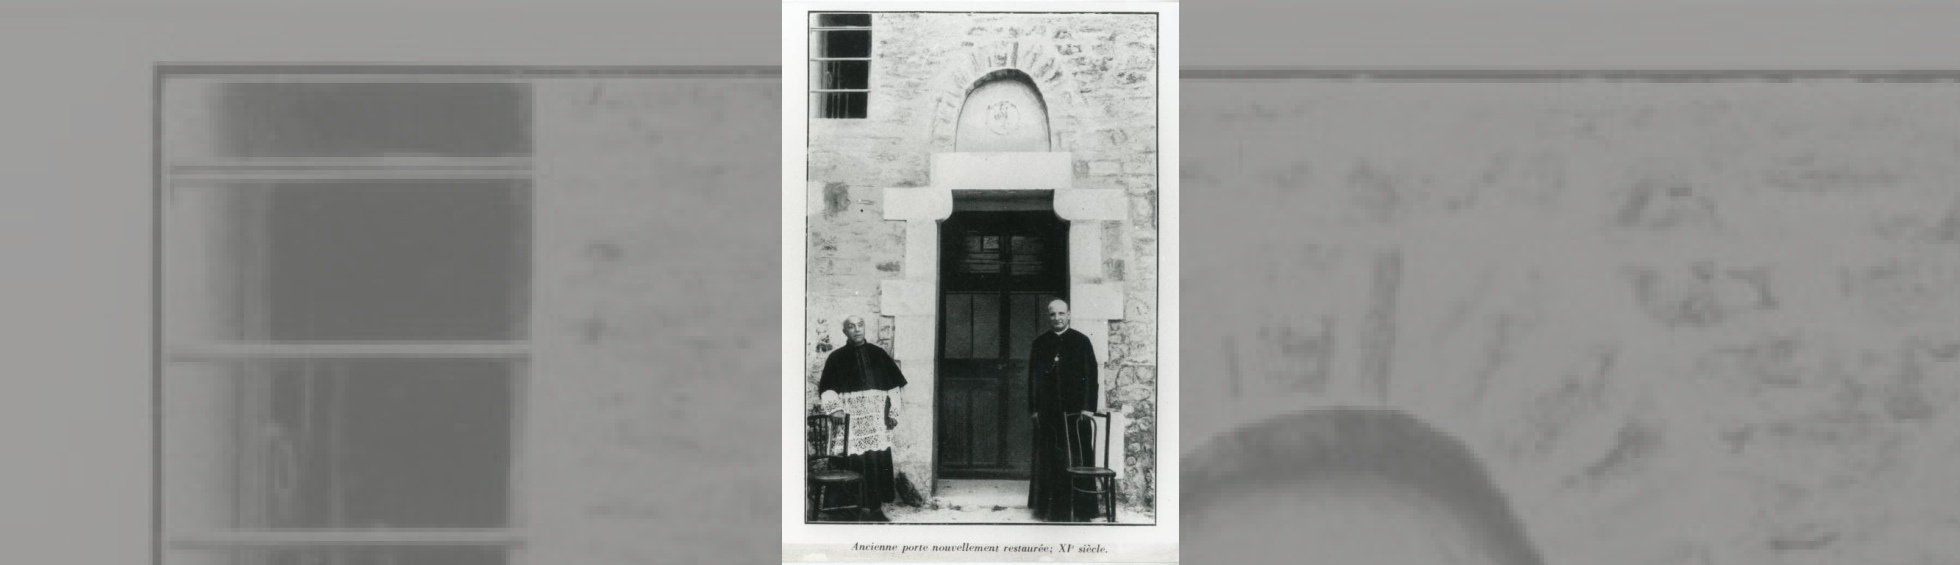 2 prêtres devant l'ancienne porte du XIème siècle nouvellement restaurée 